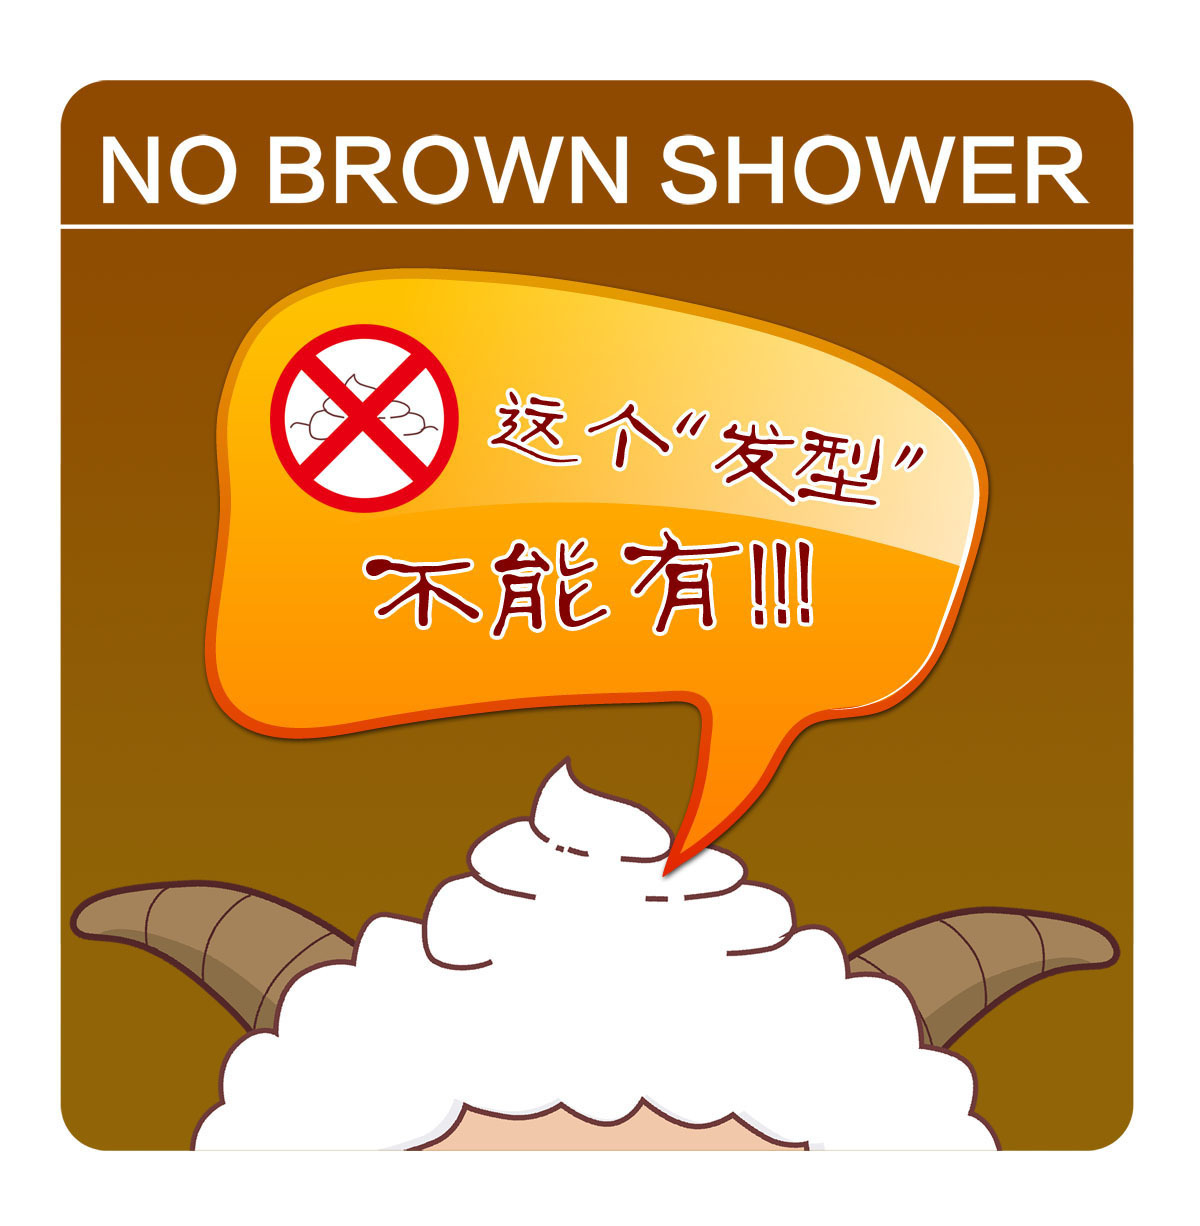 207厕所卫生间洗手间盥洗室提示语标语牌工艺品标识558禁止大便